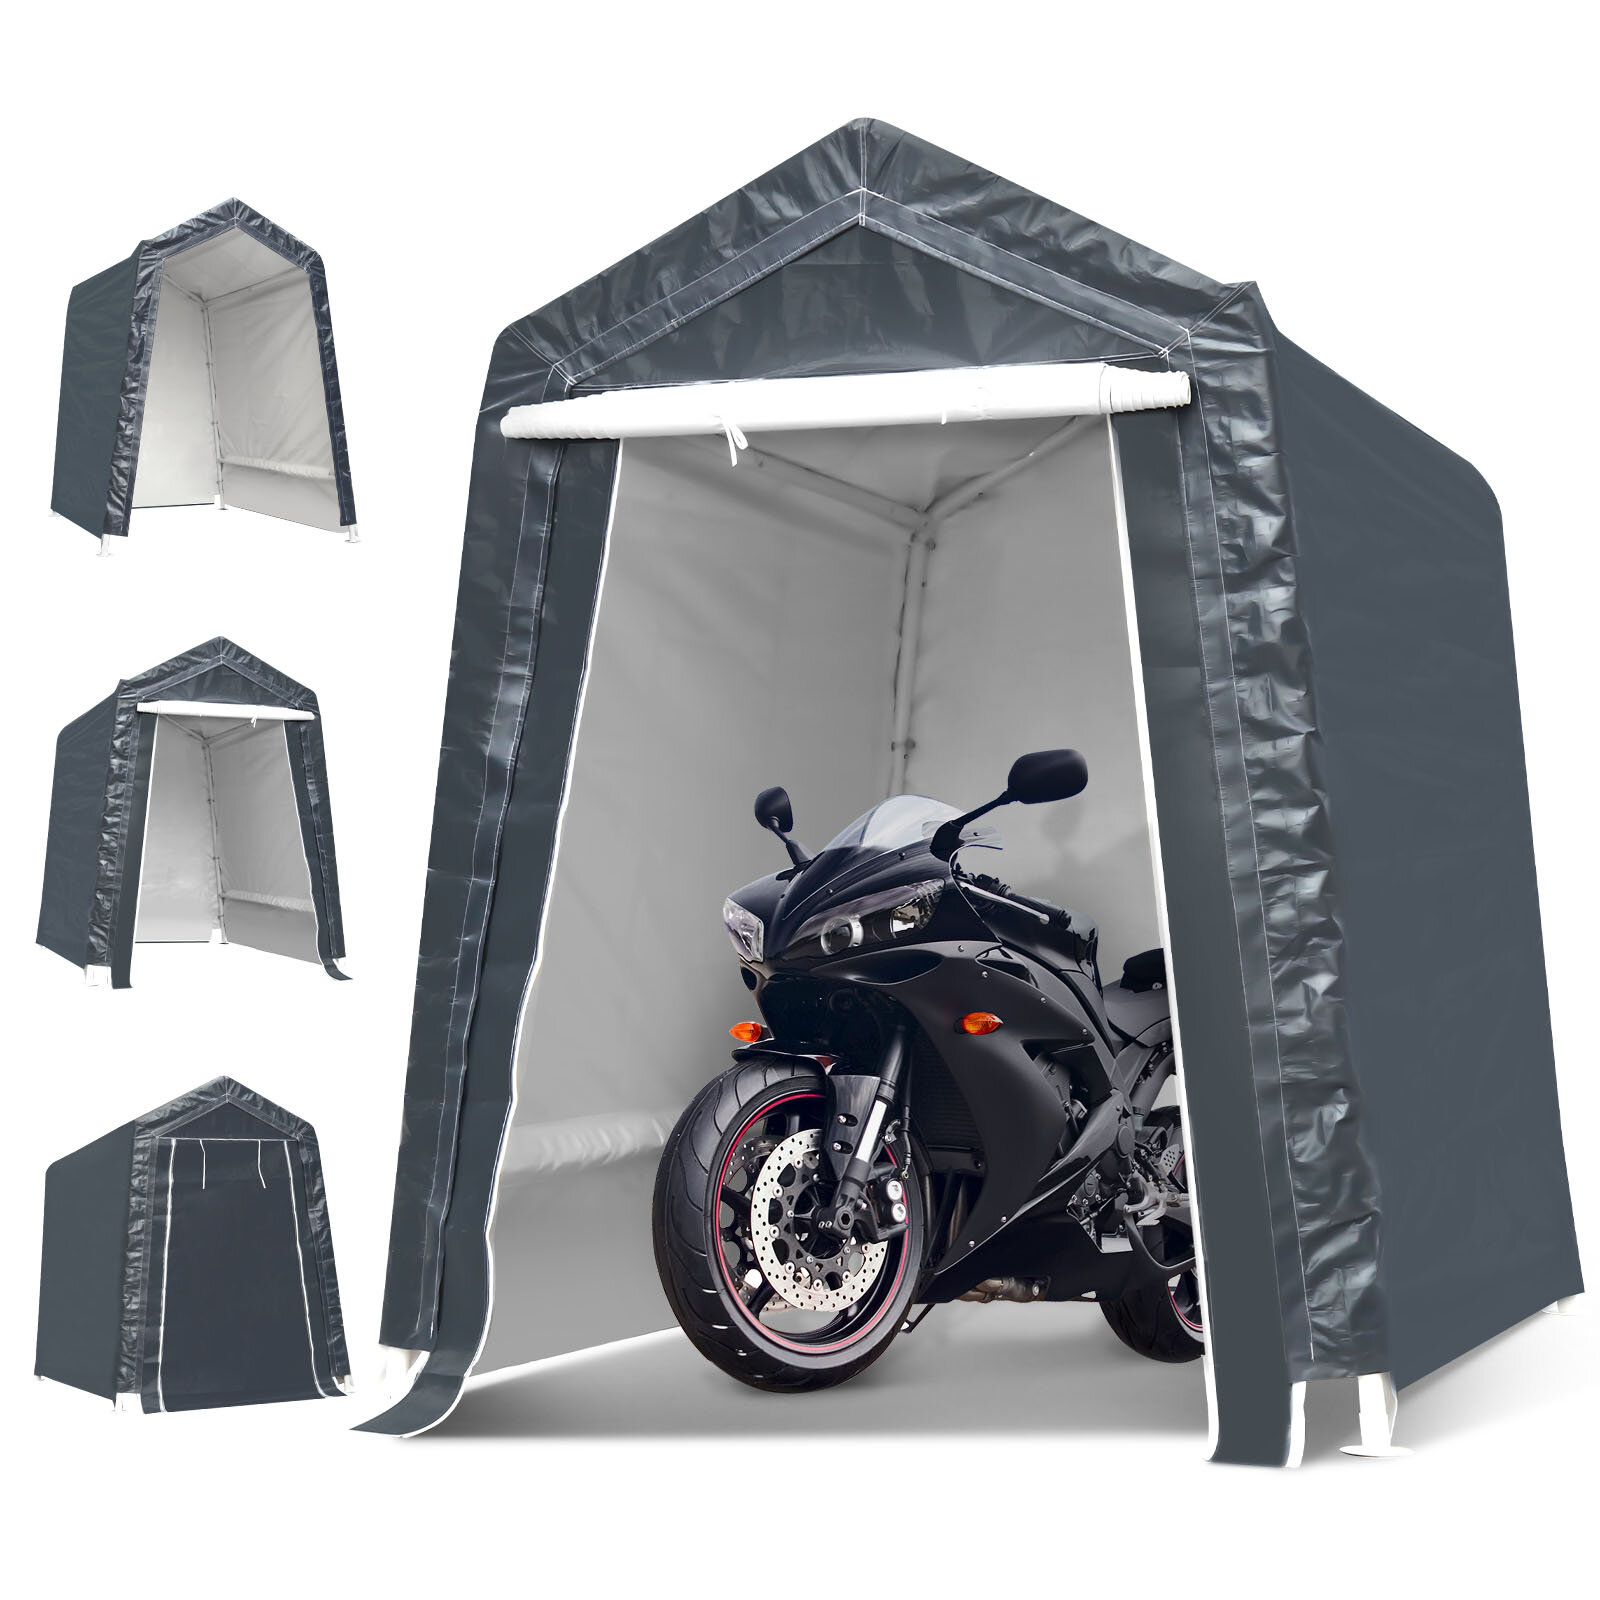 6x8x7 футов мотоцикл Навес для машины Портативный UV Водонепроницаемый чехол для хранения сараев Кемпинг Палатка с навесом Сад Патио